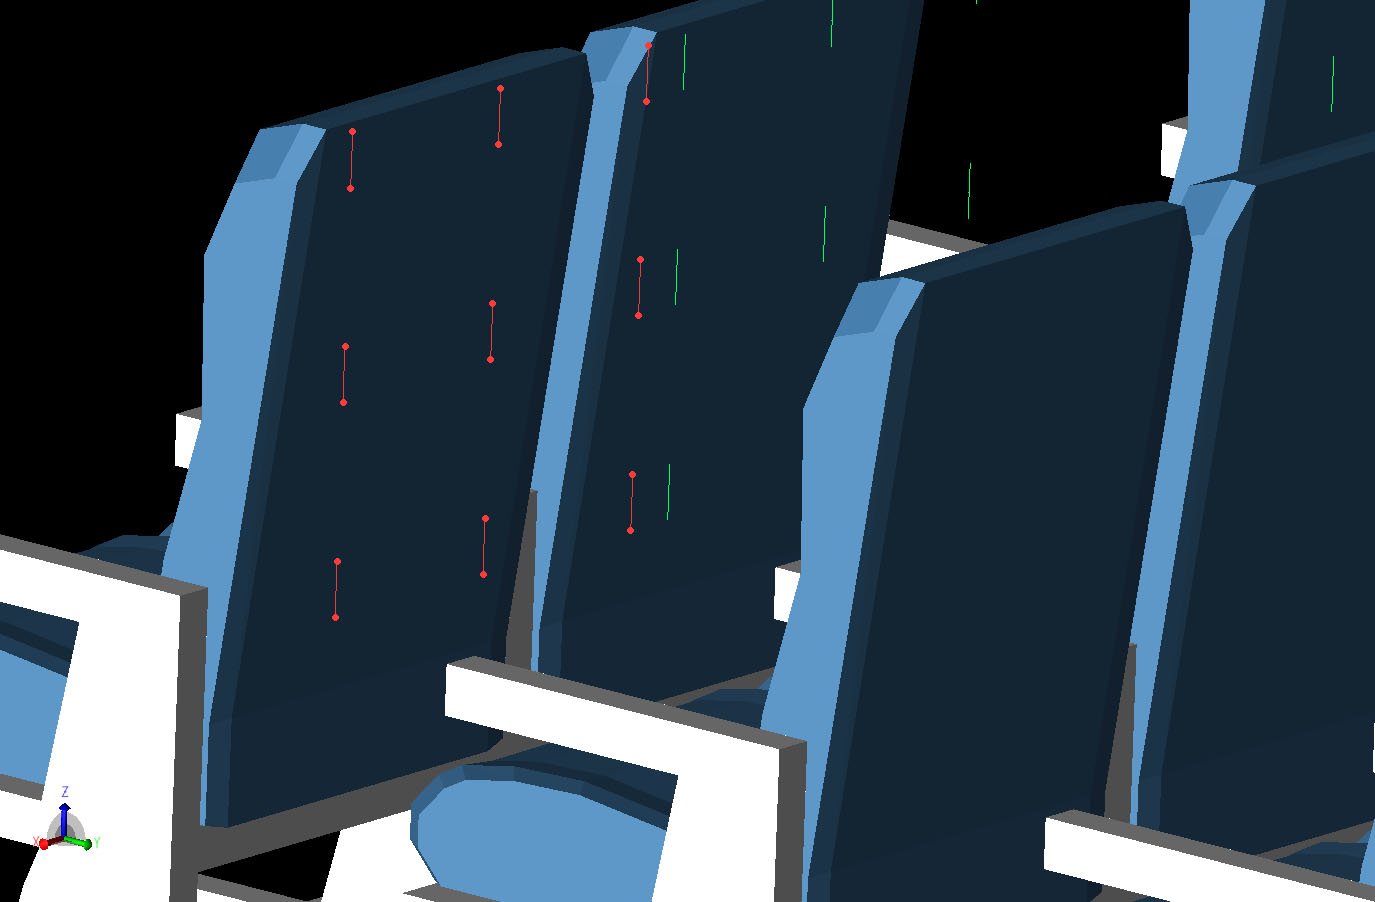 Abbildung 3Das 3x3-Raster der als Dipole definierten Sensorpositionen ist hinter einer der Sitzlehnenpositionen dargestellt. Die Sensorgitter befinden sich hinter den Sitzen in jeder zweiten Reihe der Kabine für die ersten drei Sitzreihen.